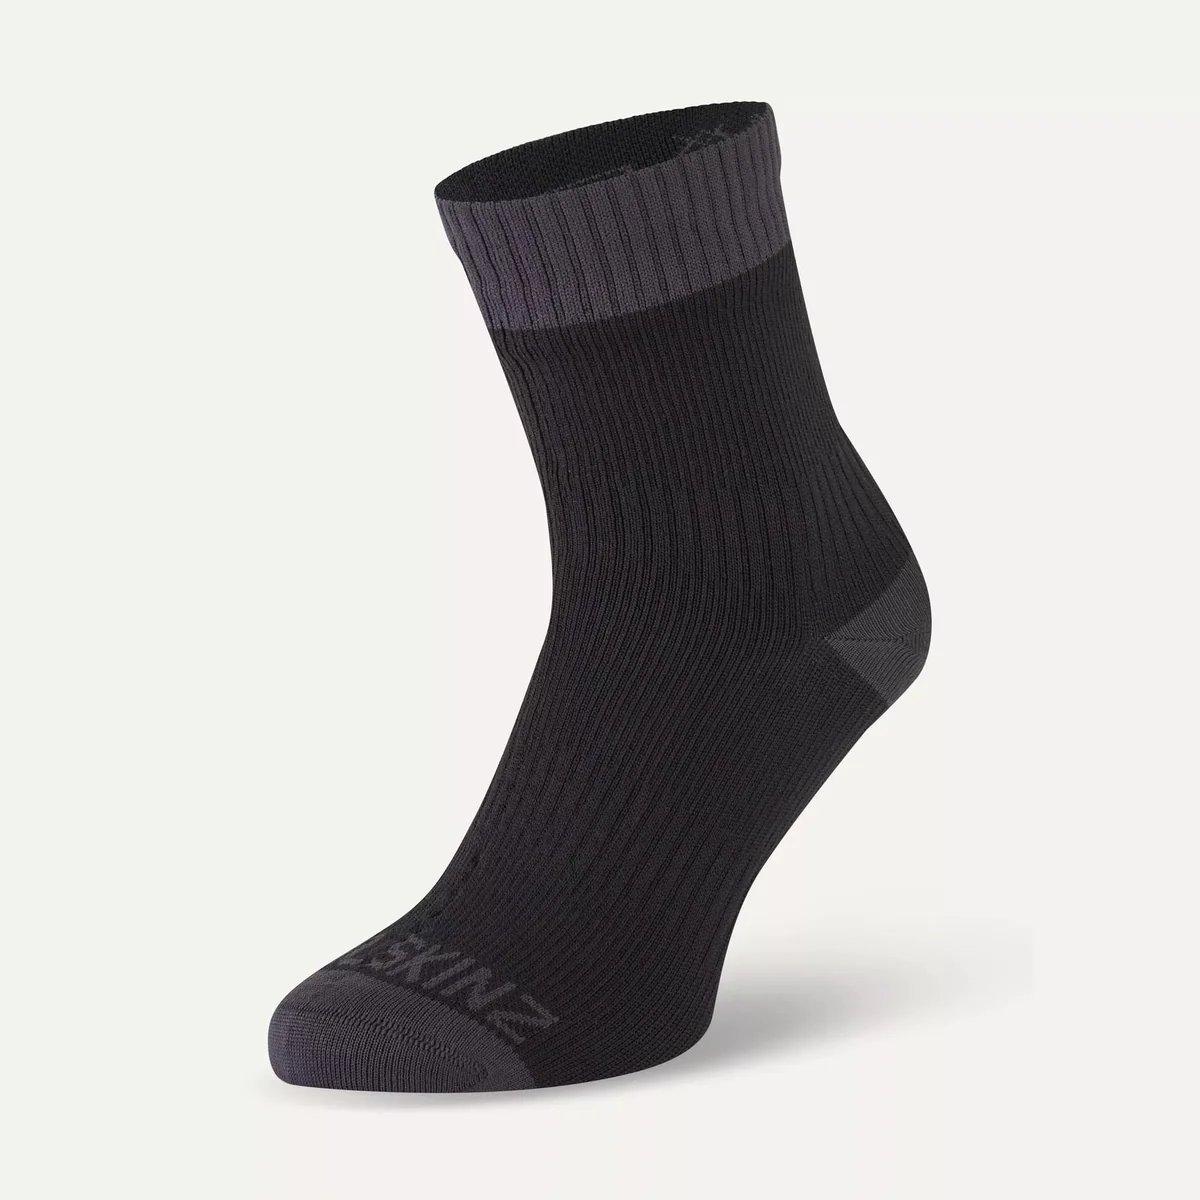 Sealskinz Unisex Wretham Sock - Black/Grey